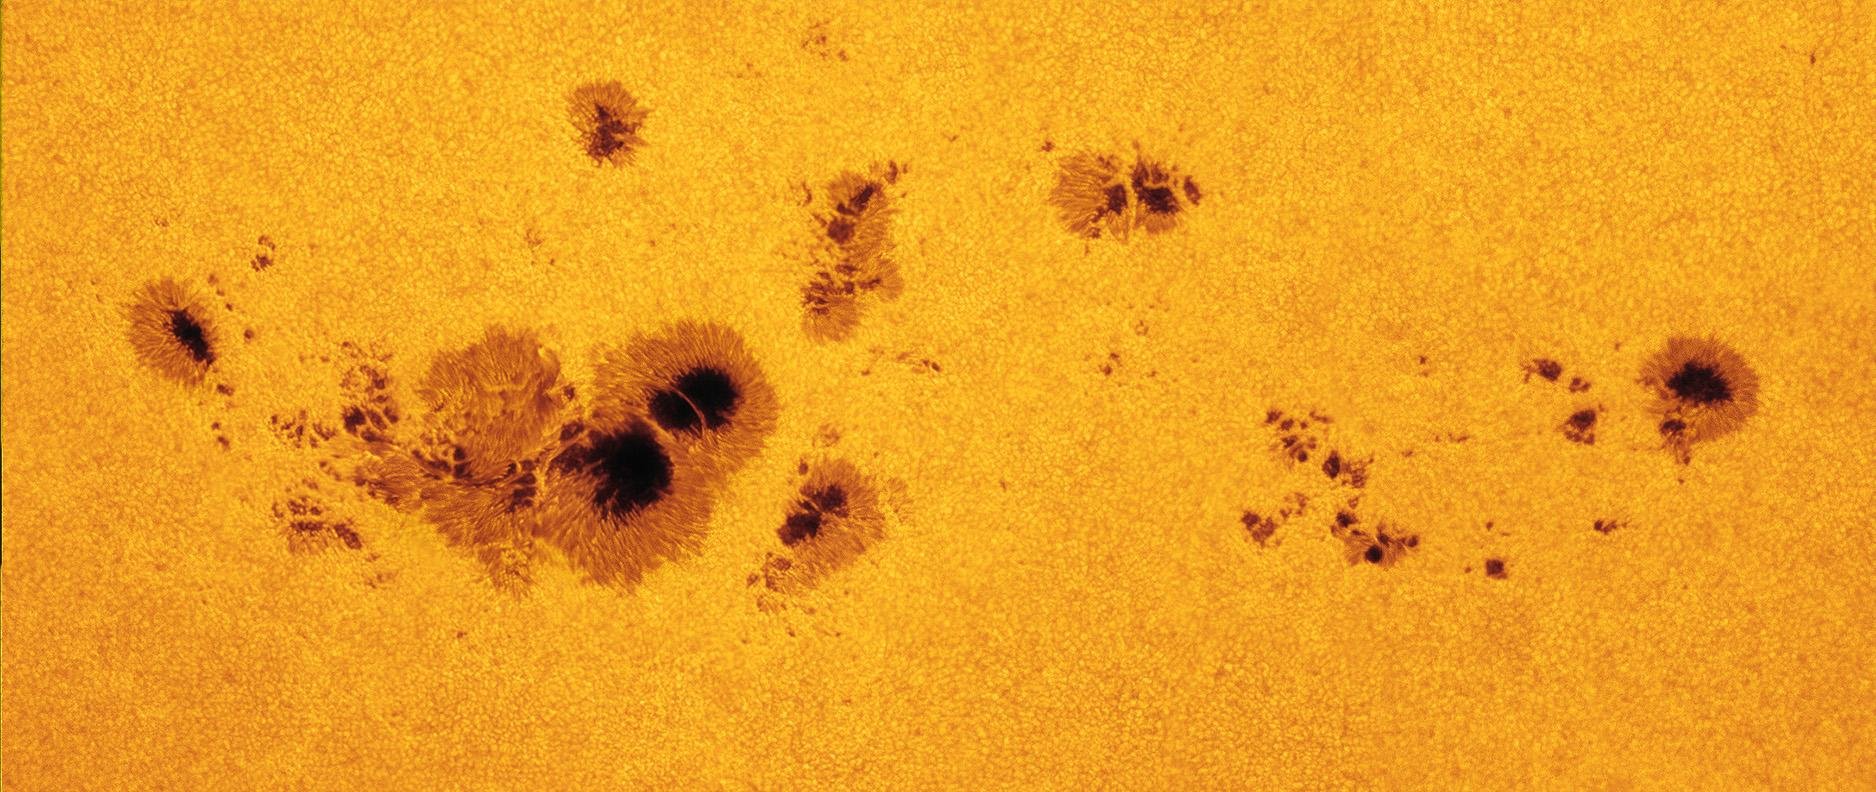 Manchas solares datadas de Julho de 2012. A maior mancha, no canto inferior esquerda, possui o tamanho correspondente a 11 Terras, aproximadamente